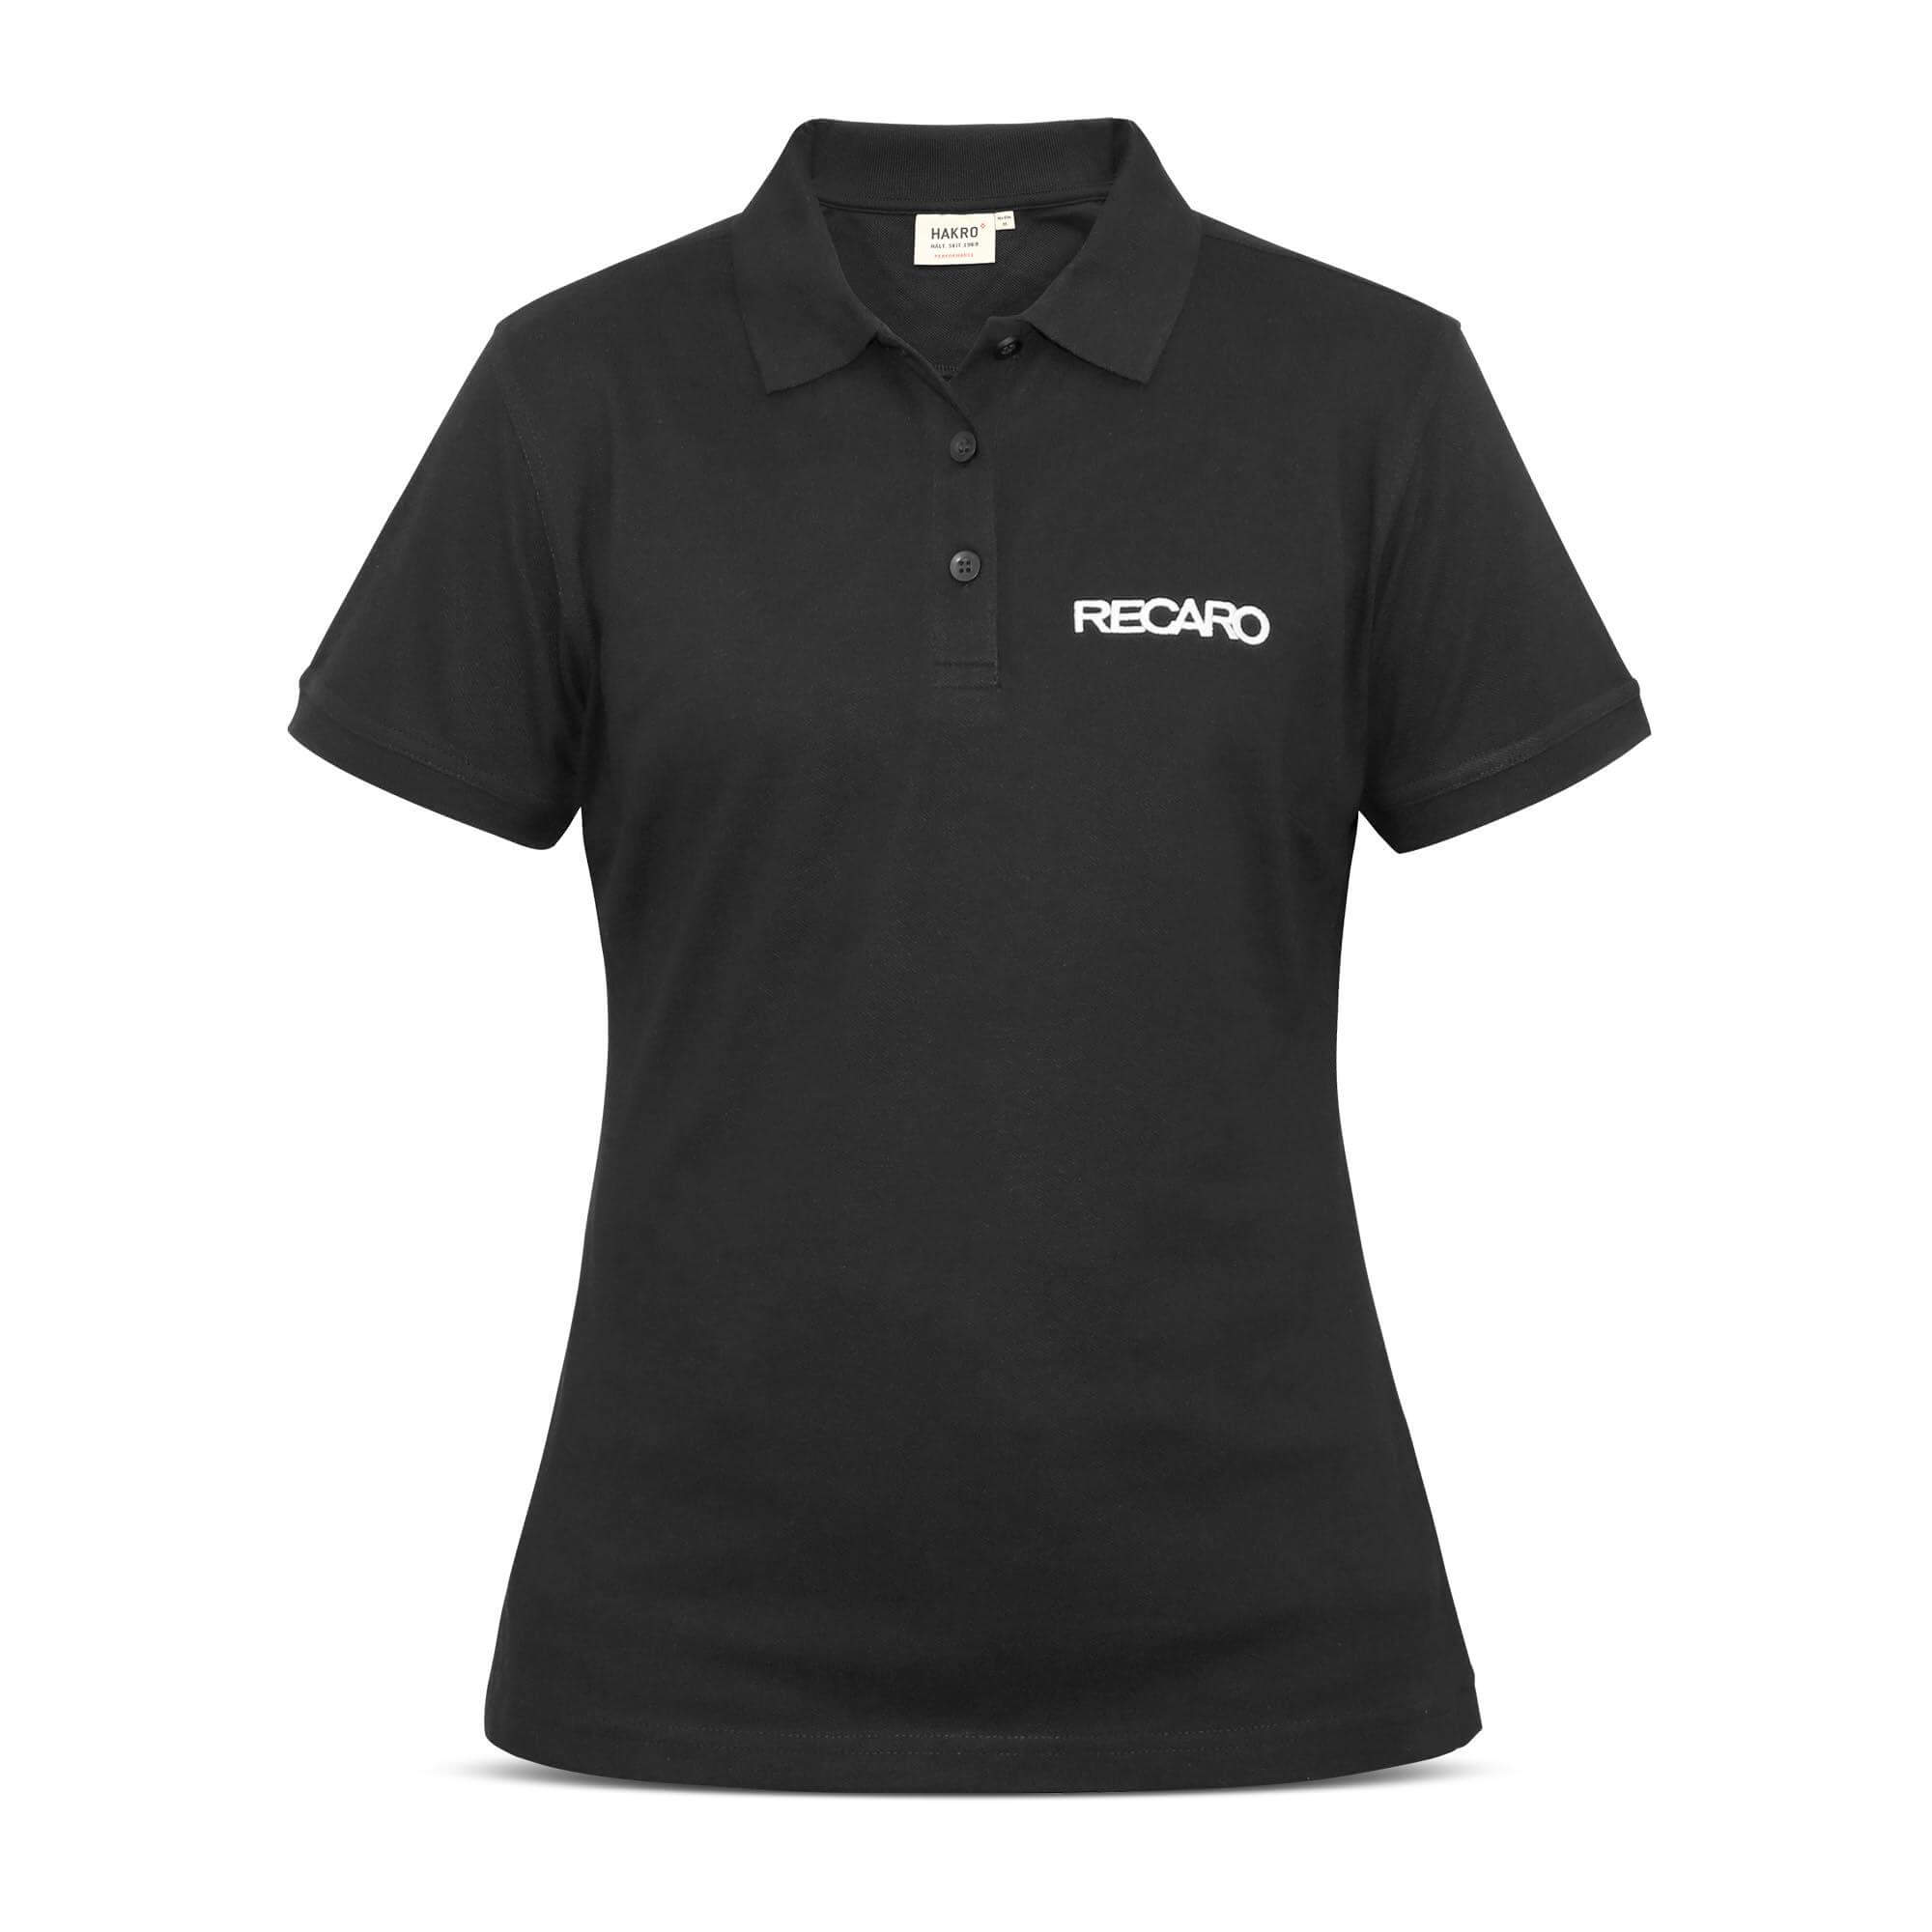 RECARO 21000375 Polo shirt ladies, size S Photo-0 